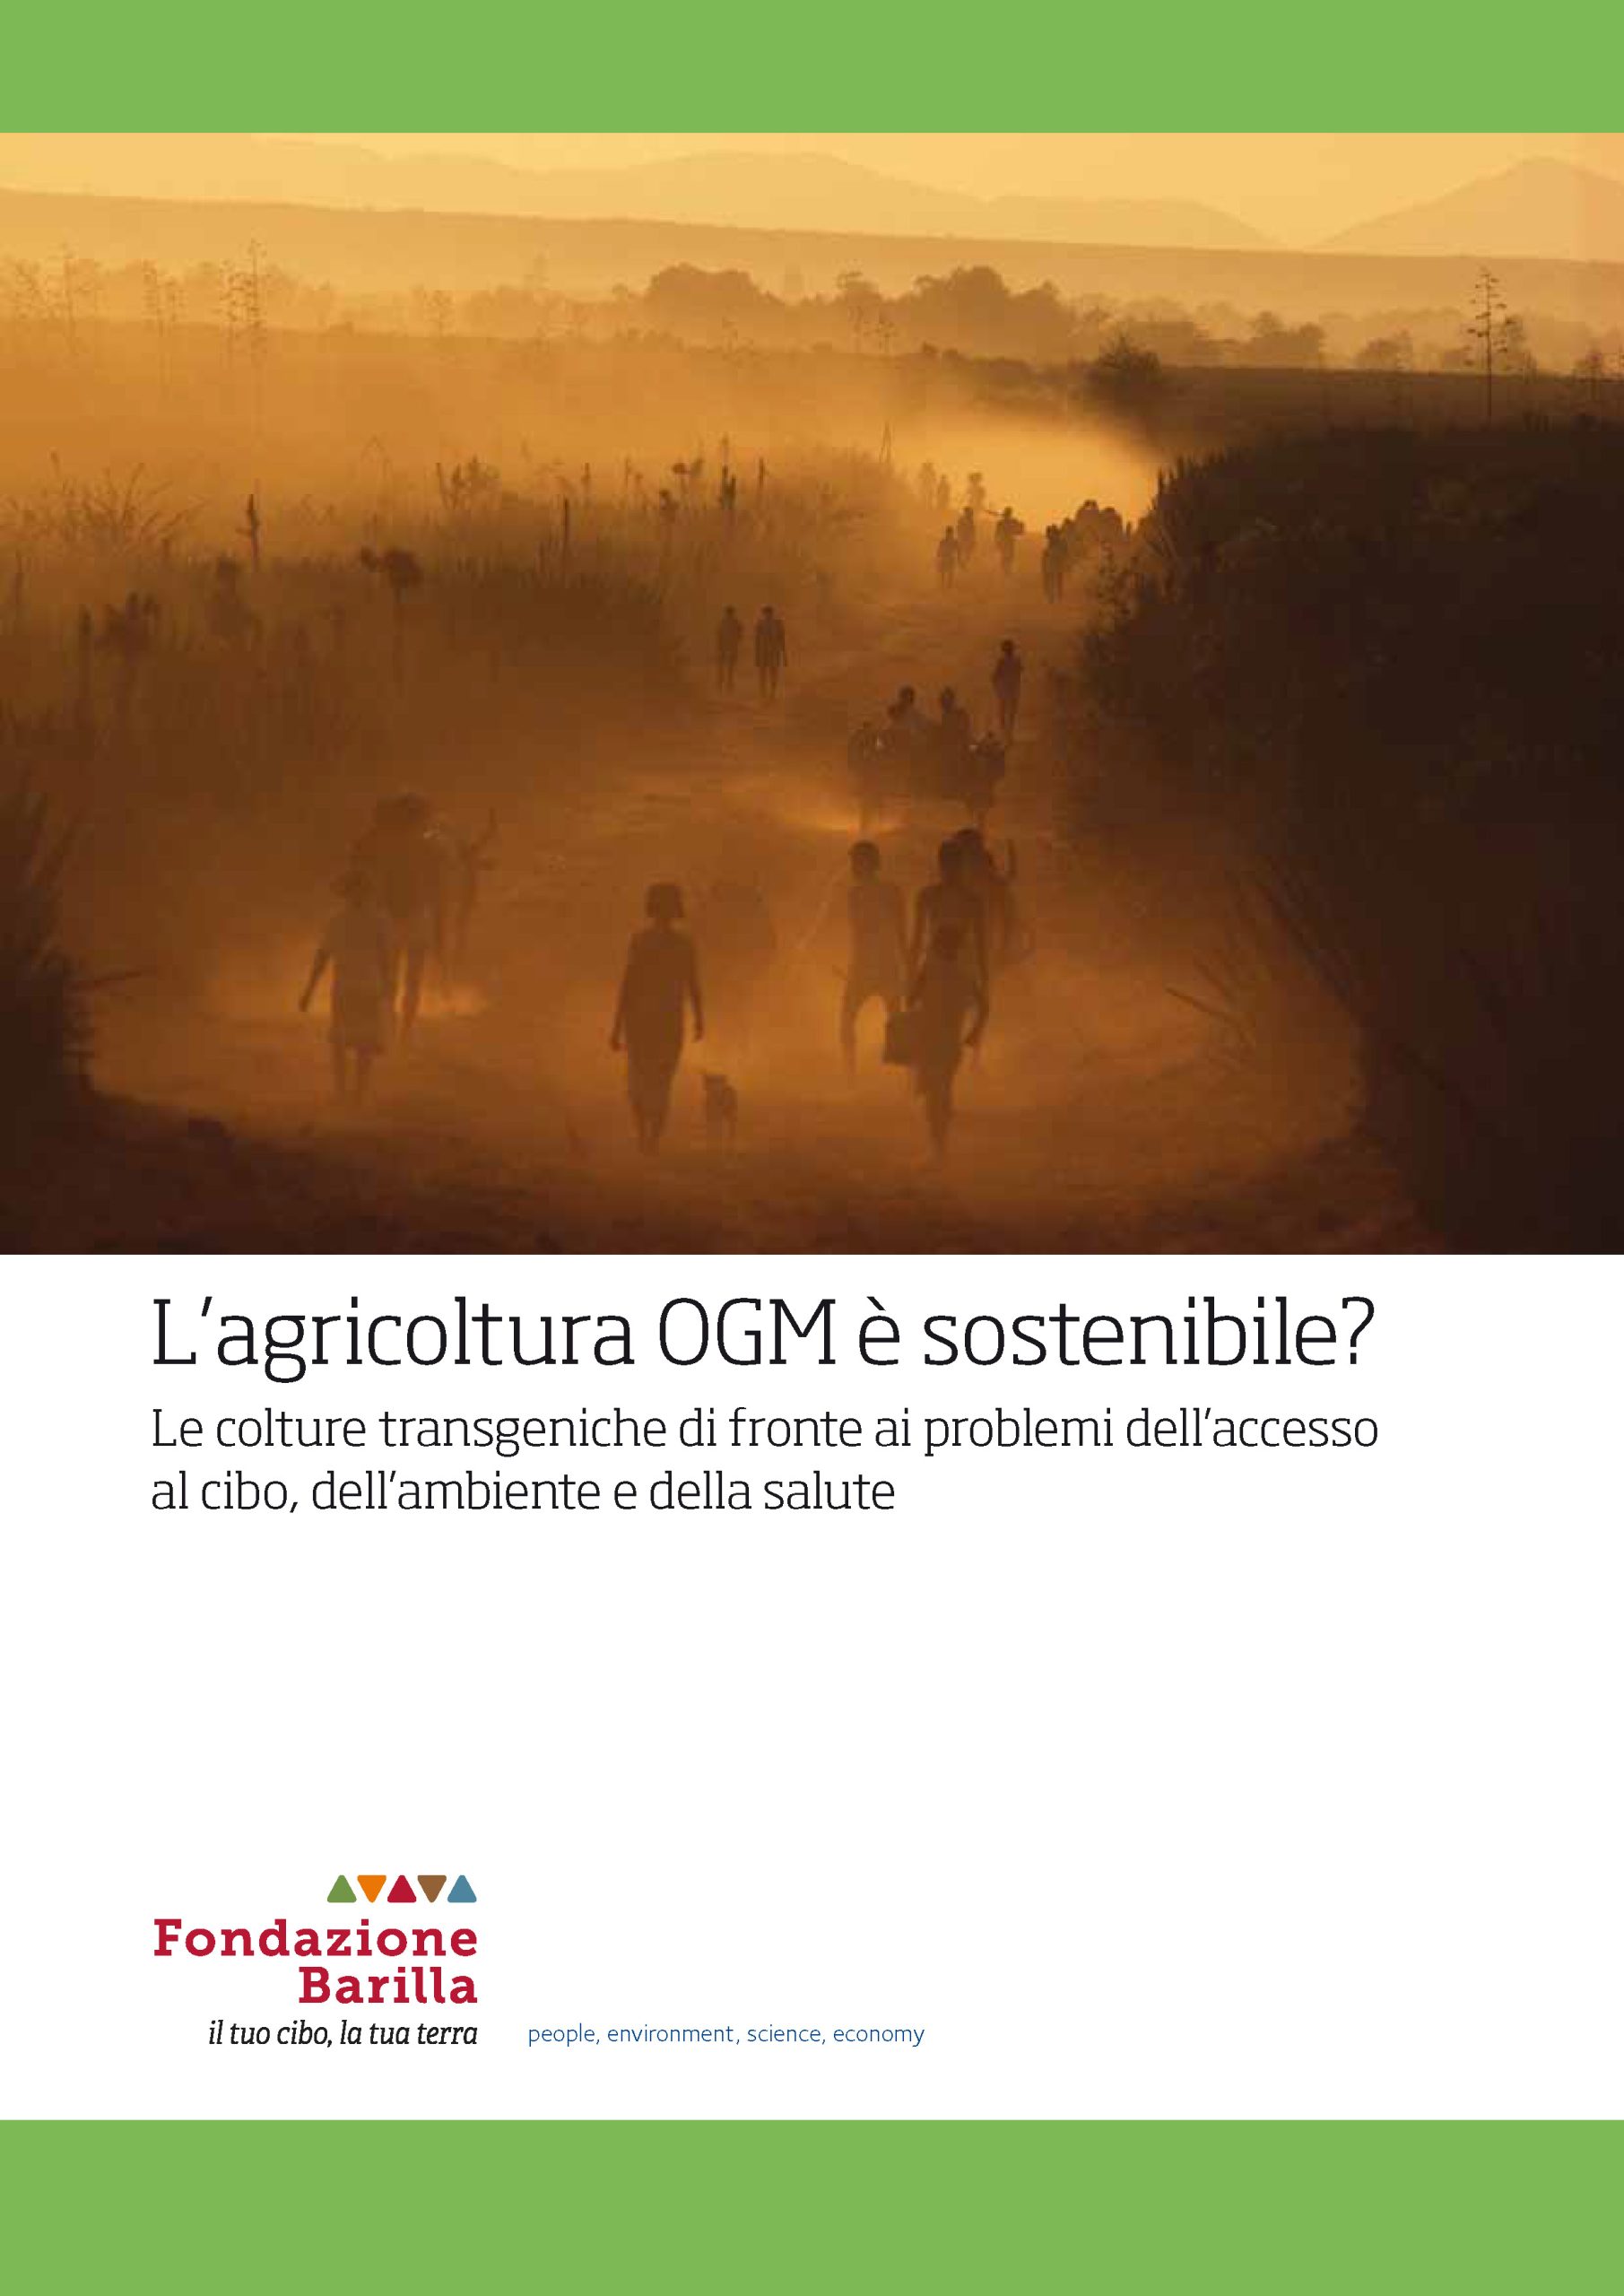 L’agricoltura OGM è sostenibile?